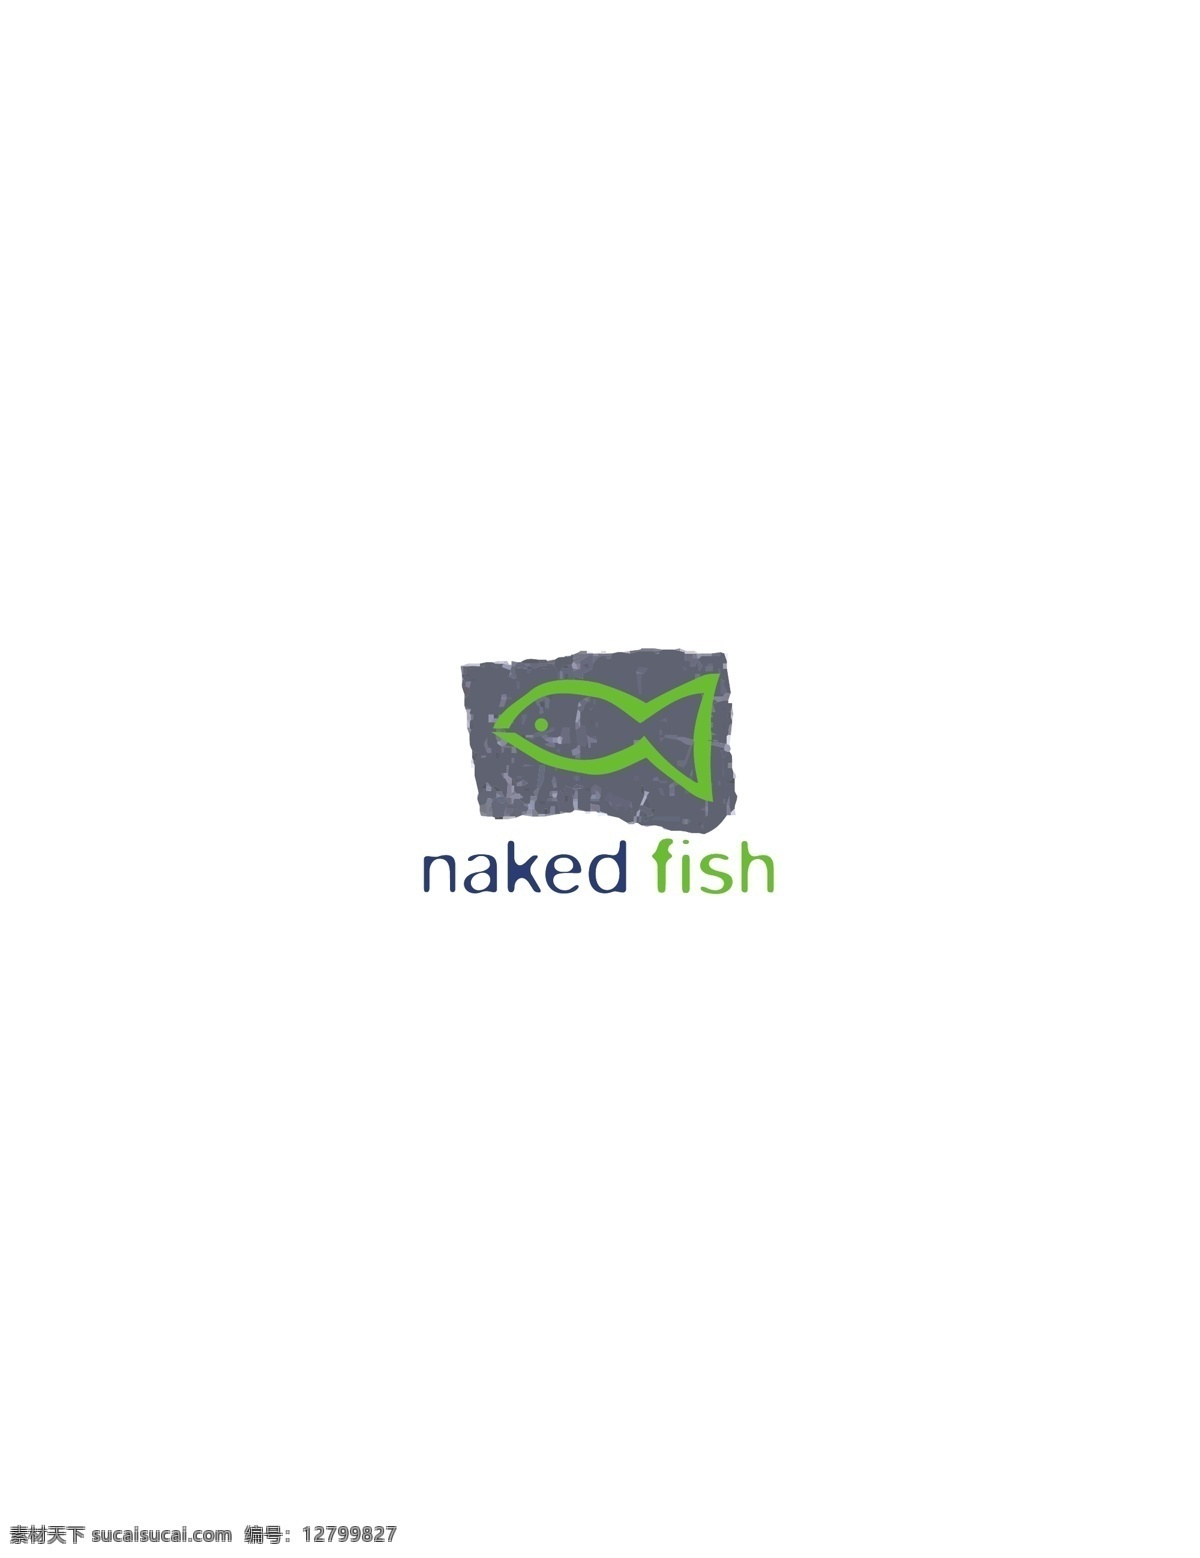 logo大全 logo 设计欣赏 商业矢量 矢量下载 nakedfish 食物 品牌 标志 标志设计 欣赏 网页矢量 矢量图 其他矢量图